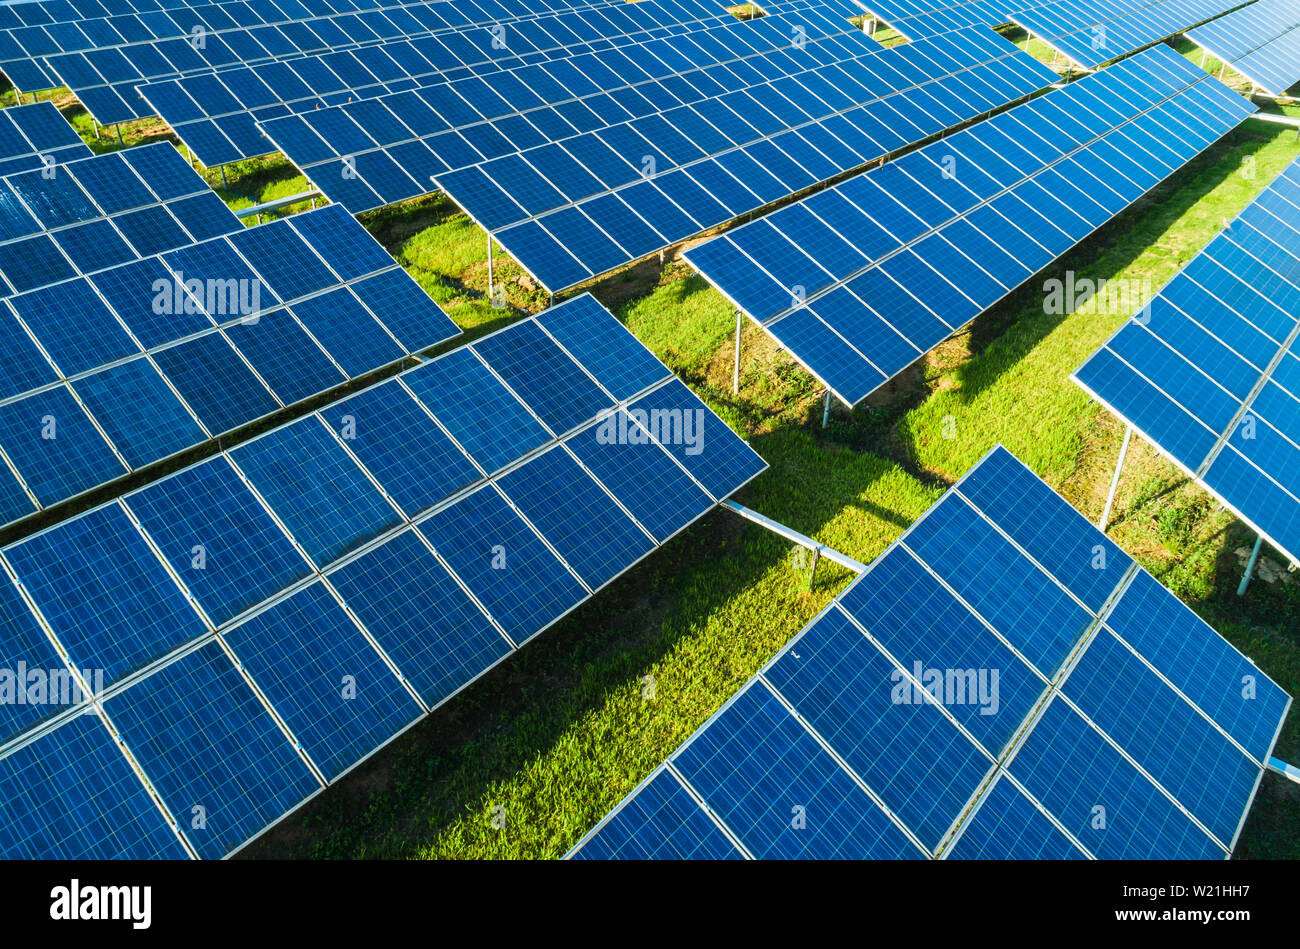 Vista aérea de paneles solares de granja con luz solar. Concepto de energía renovable alternativa verde. Foto de stock